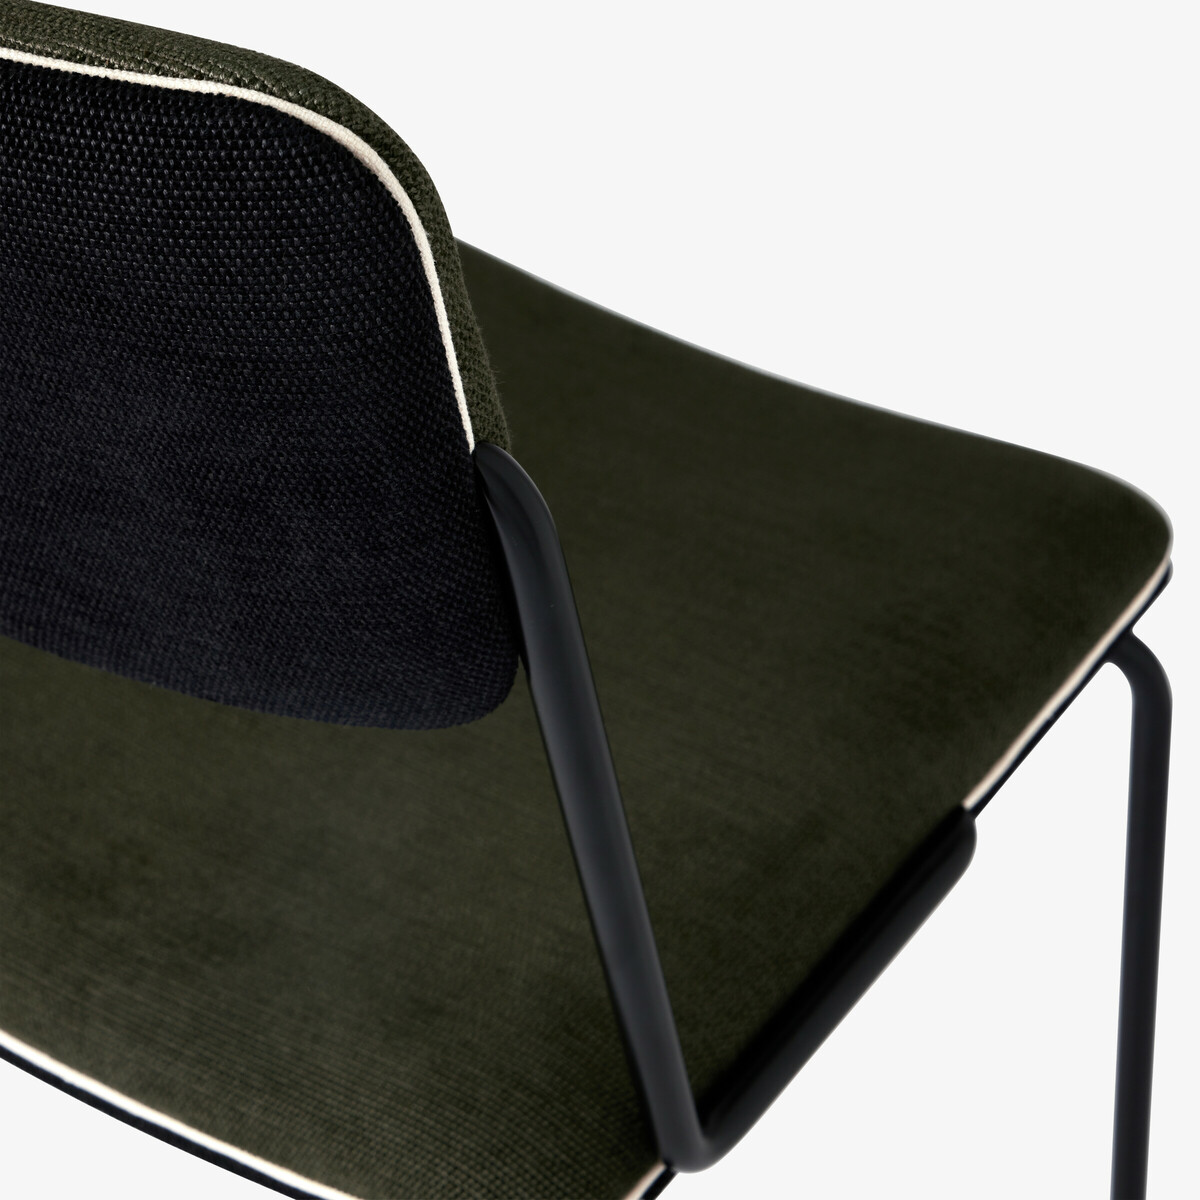 Chaise Double Jeu, Vert / Noir - H85 x l45 x P43 cm - Coton - image 2